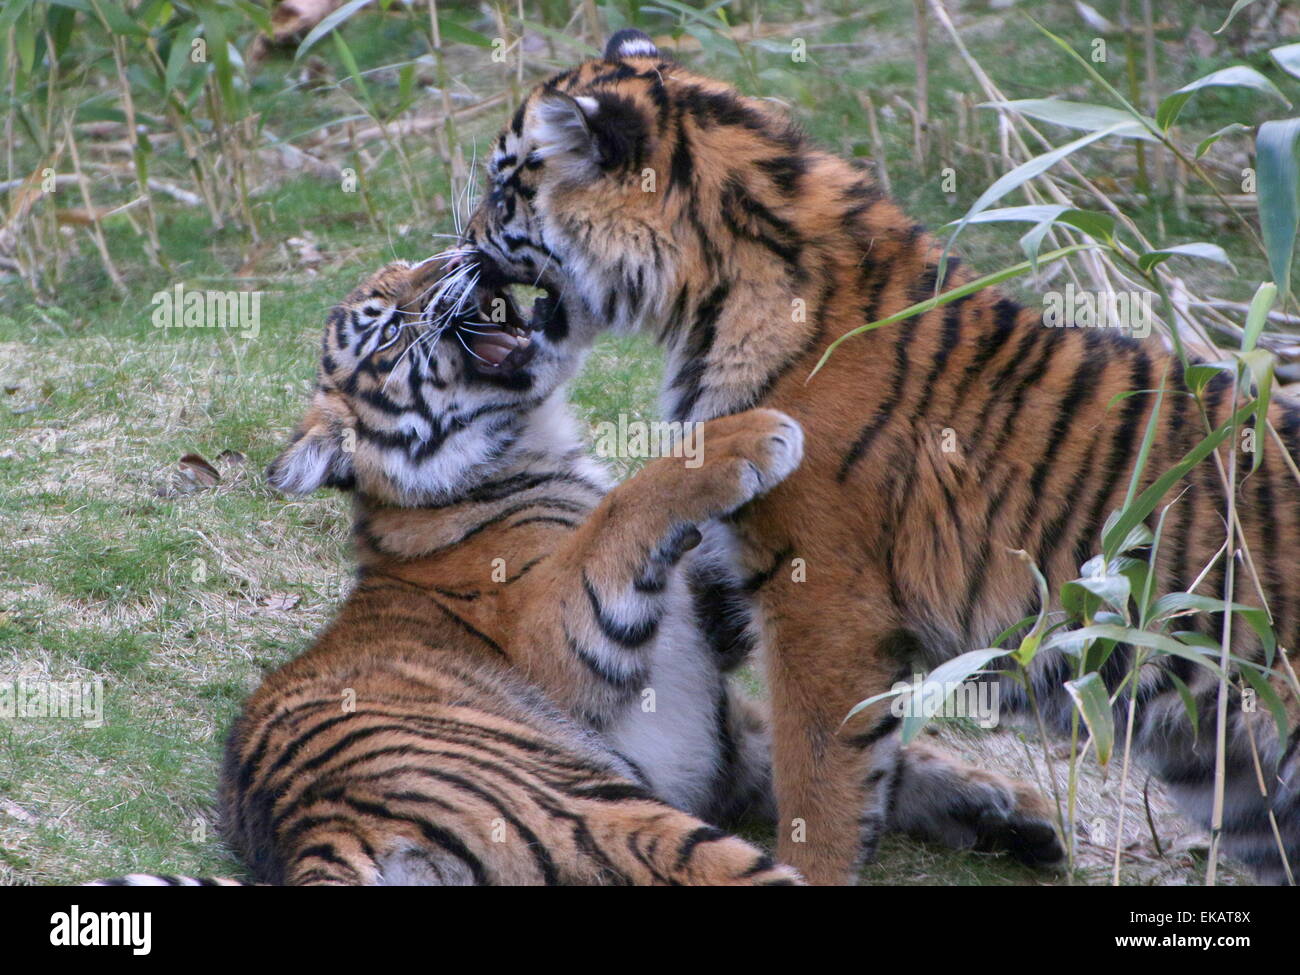 Cachorros de tigre de Sumatra (Panthera tigris sumatrae) tocando y mordiendo cada otros Foto de stock